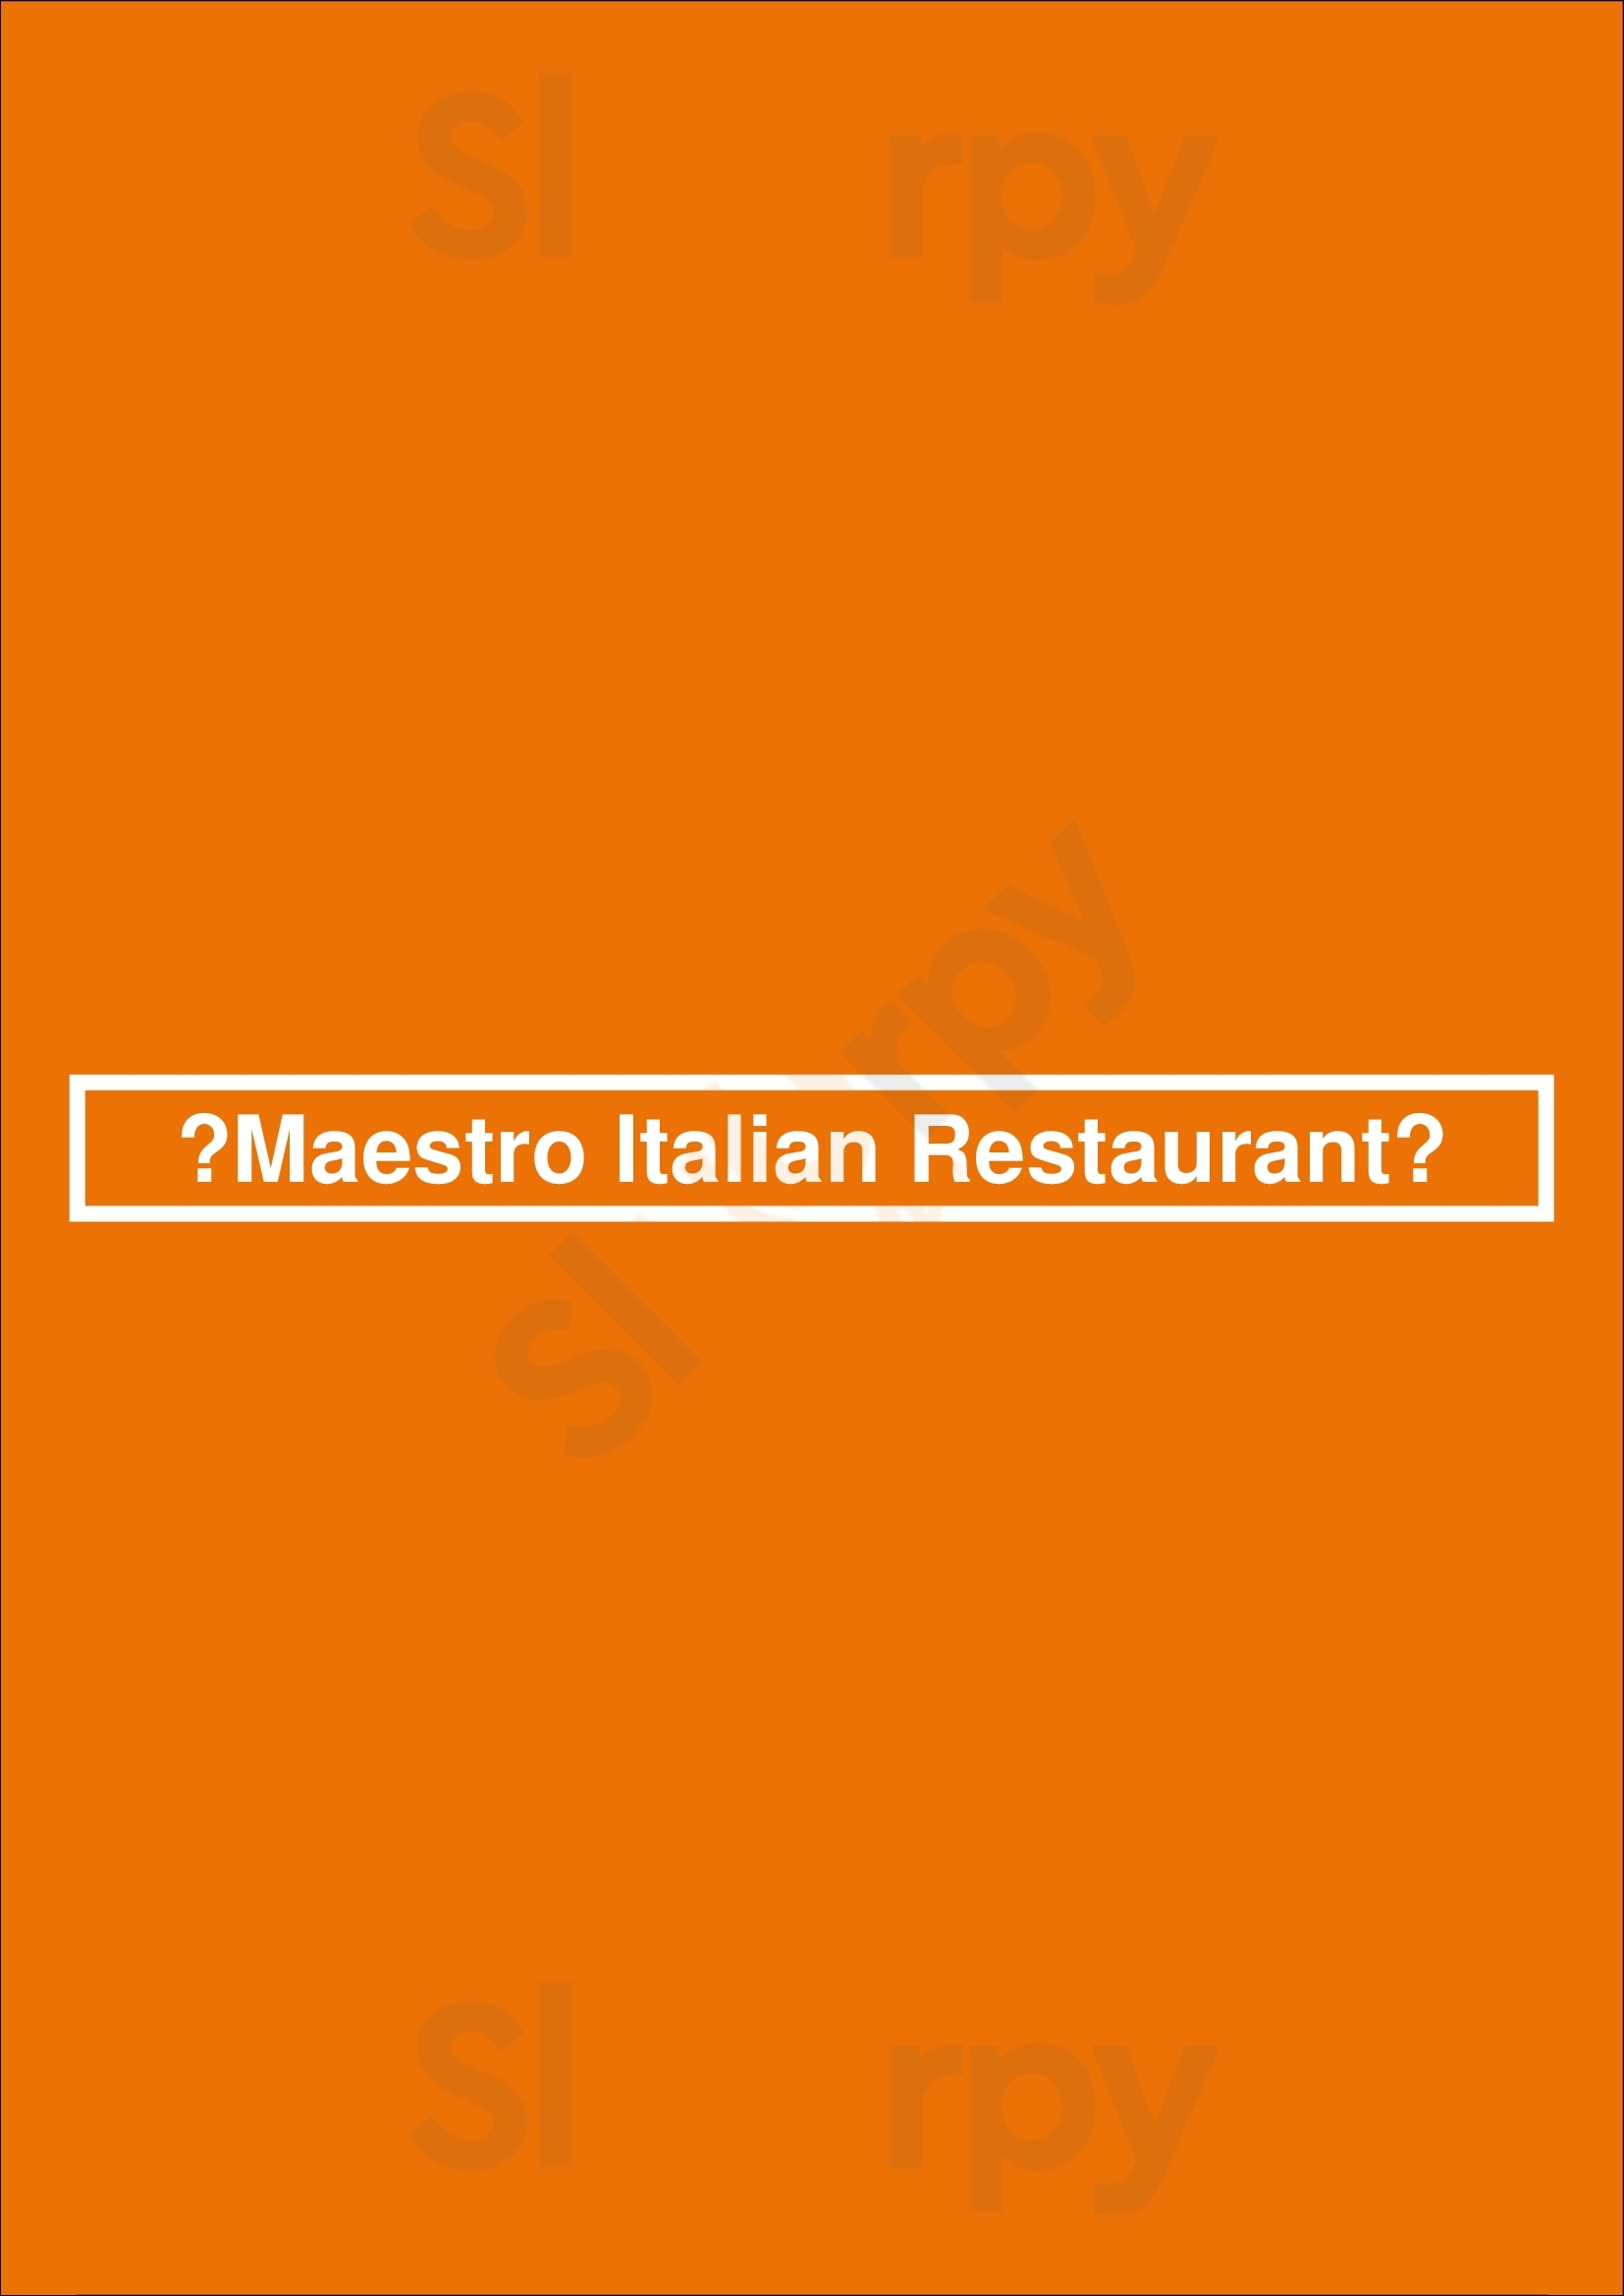 ‪maestro Italian Restaurant‬ القاهرة Menu - 1